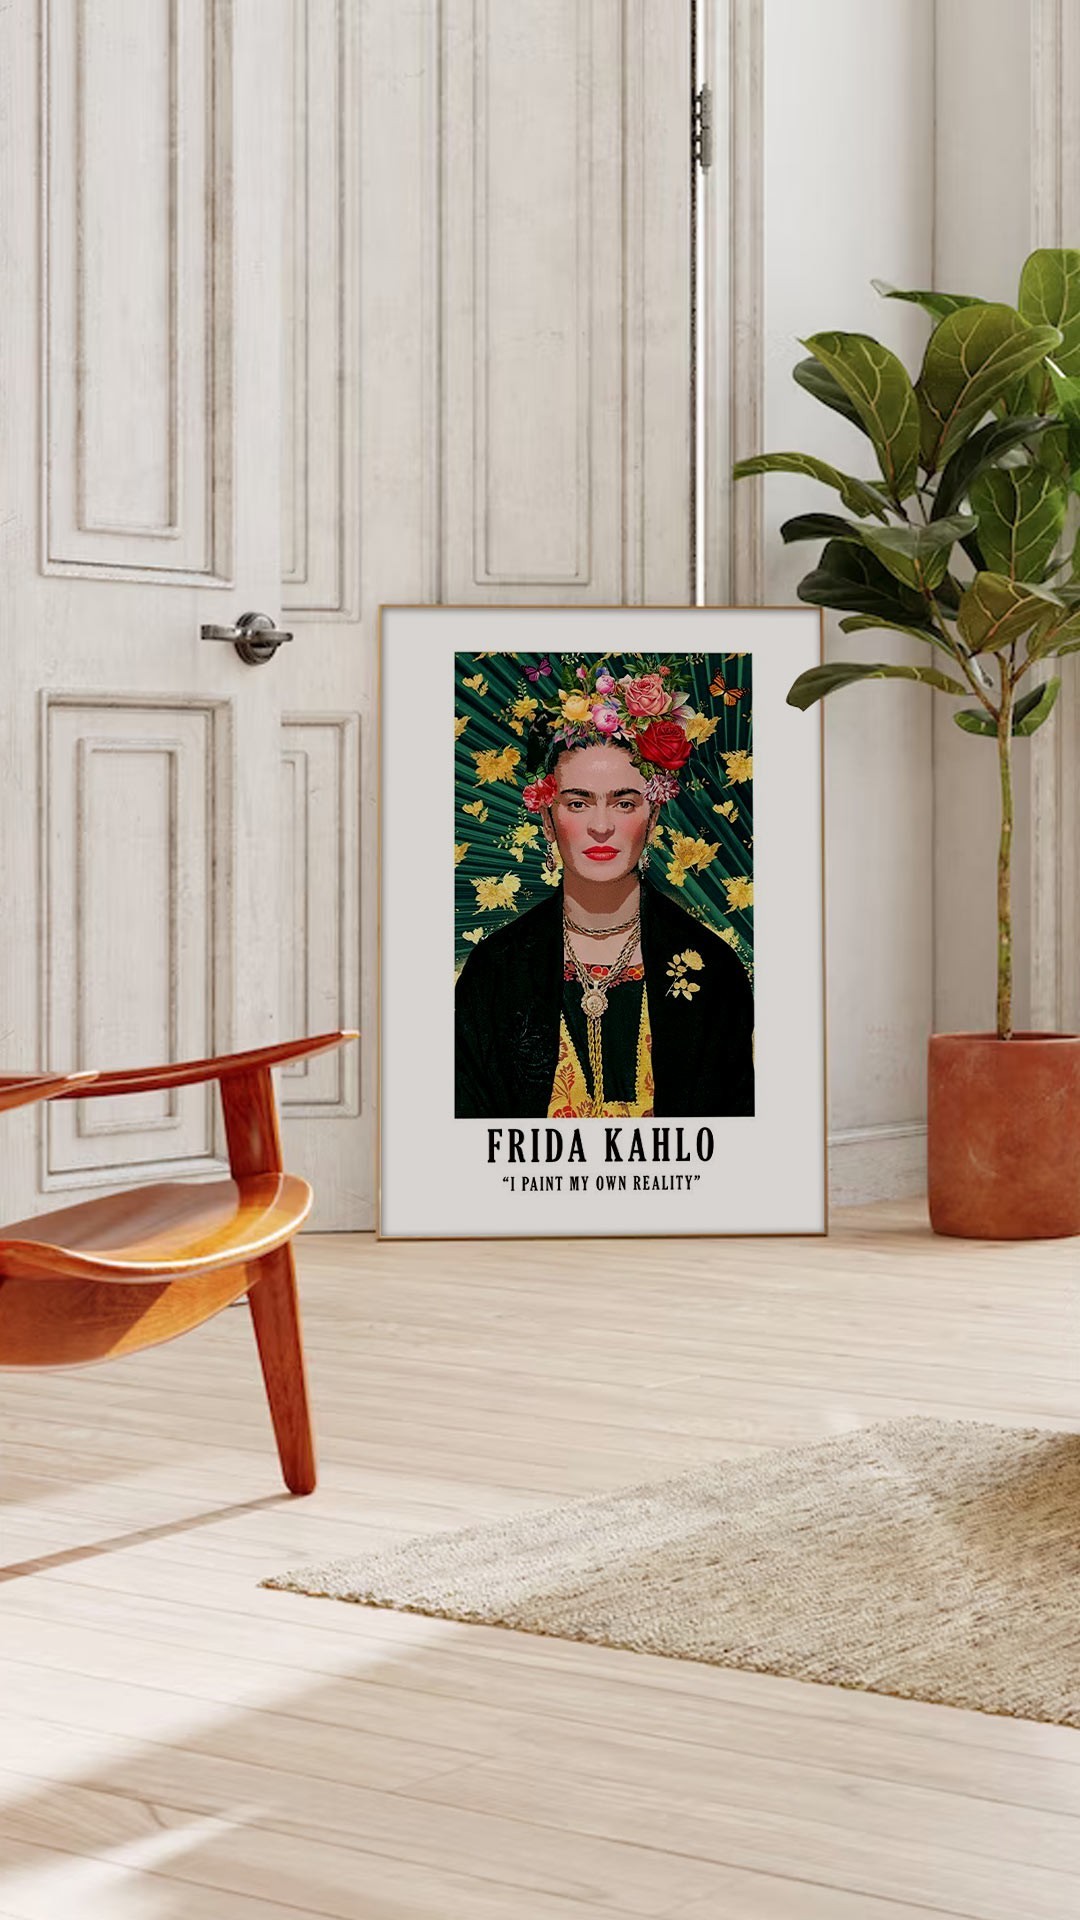 Αφίσες-Poster με έργα της Kahlo